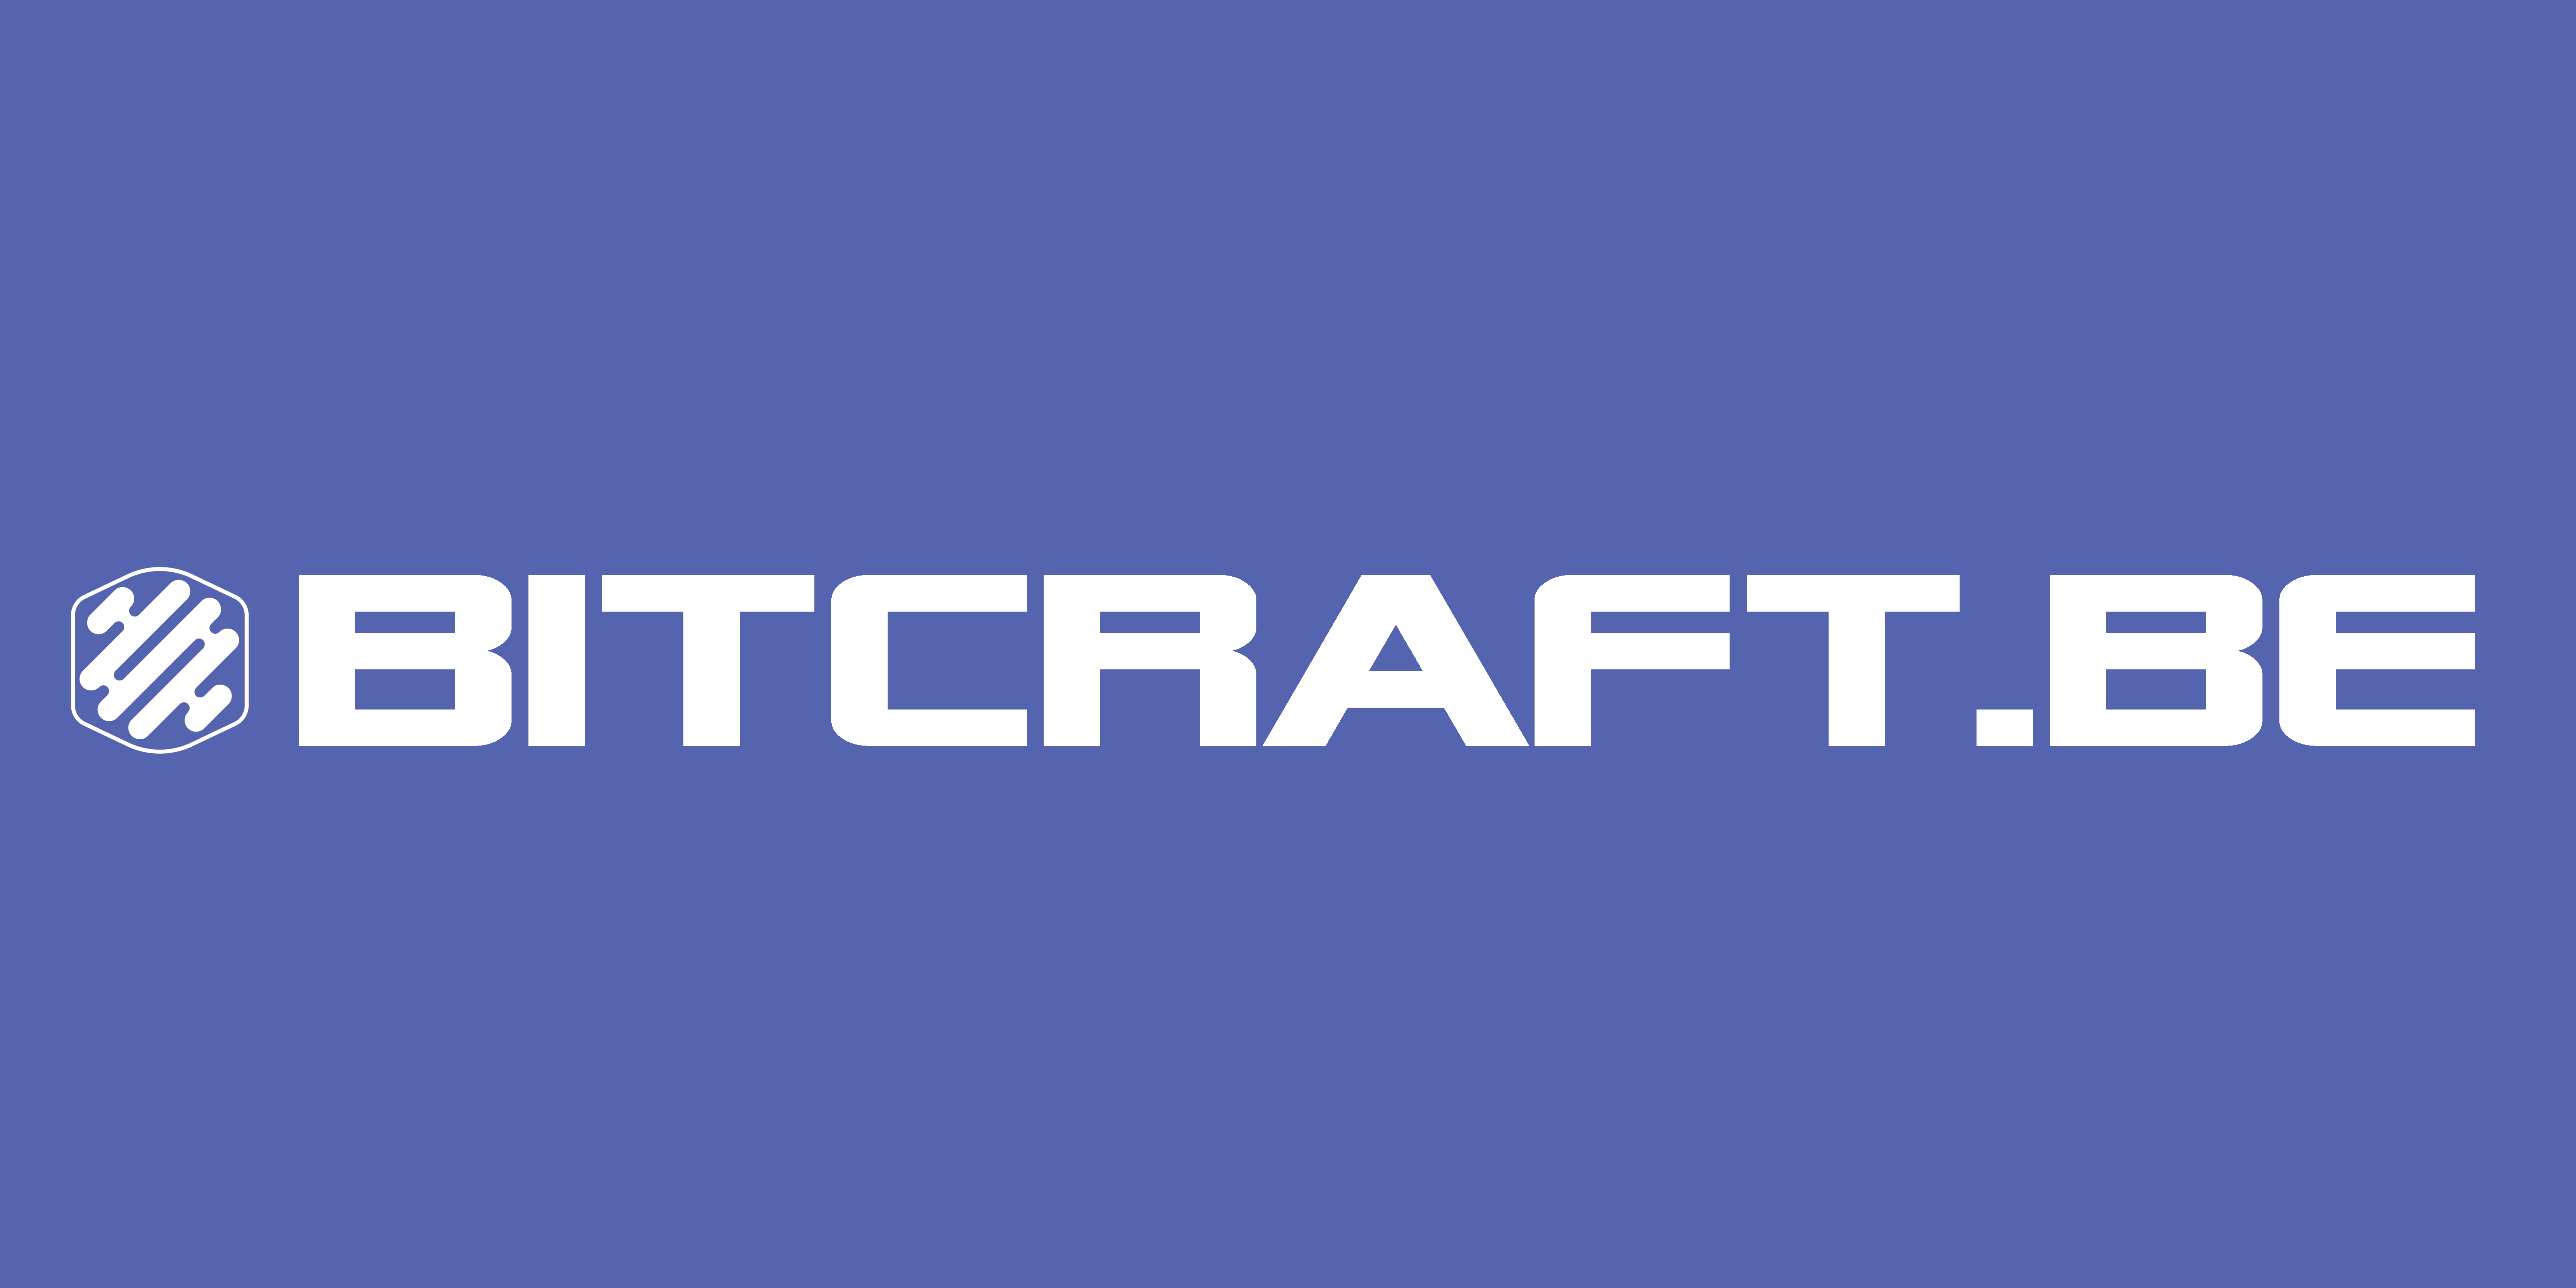 Bitcraft Software Engineering